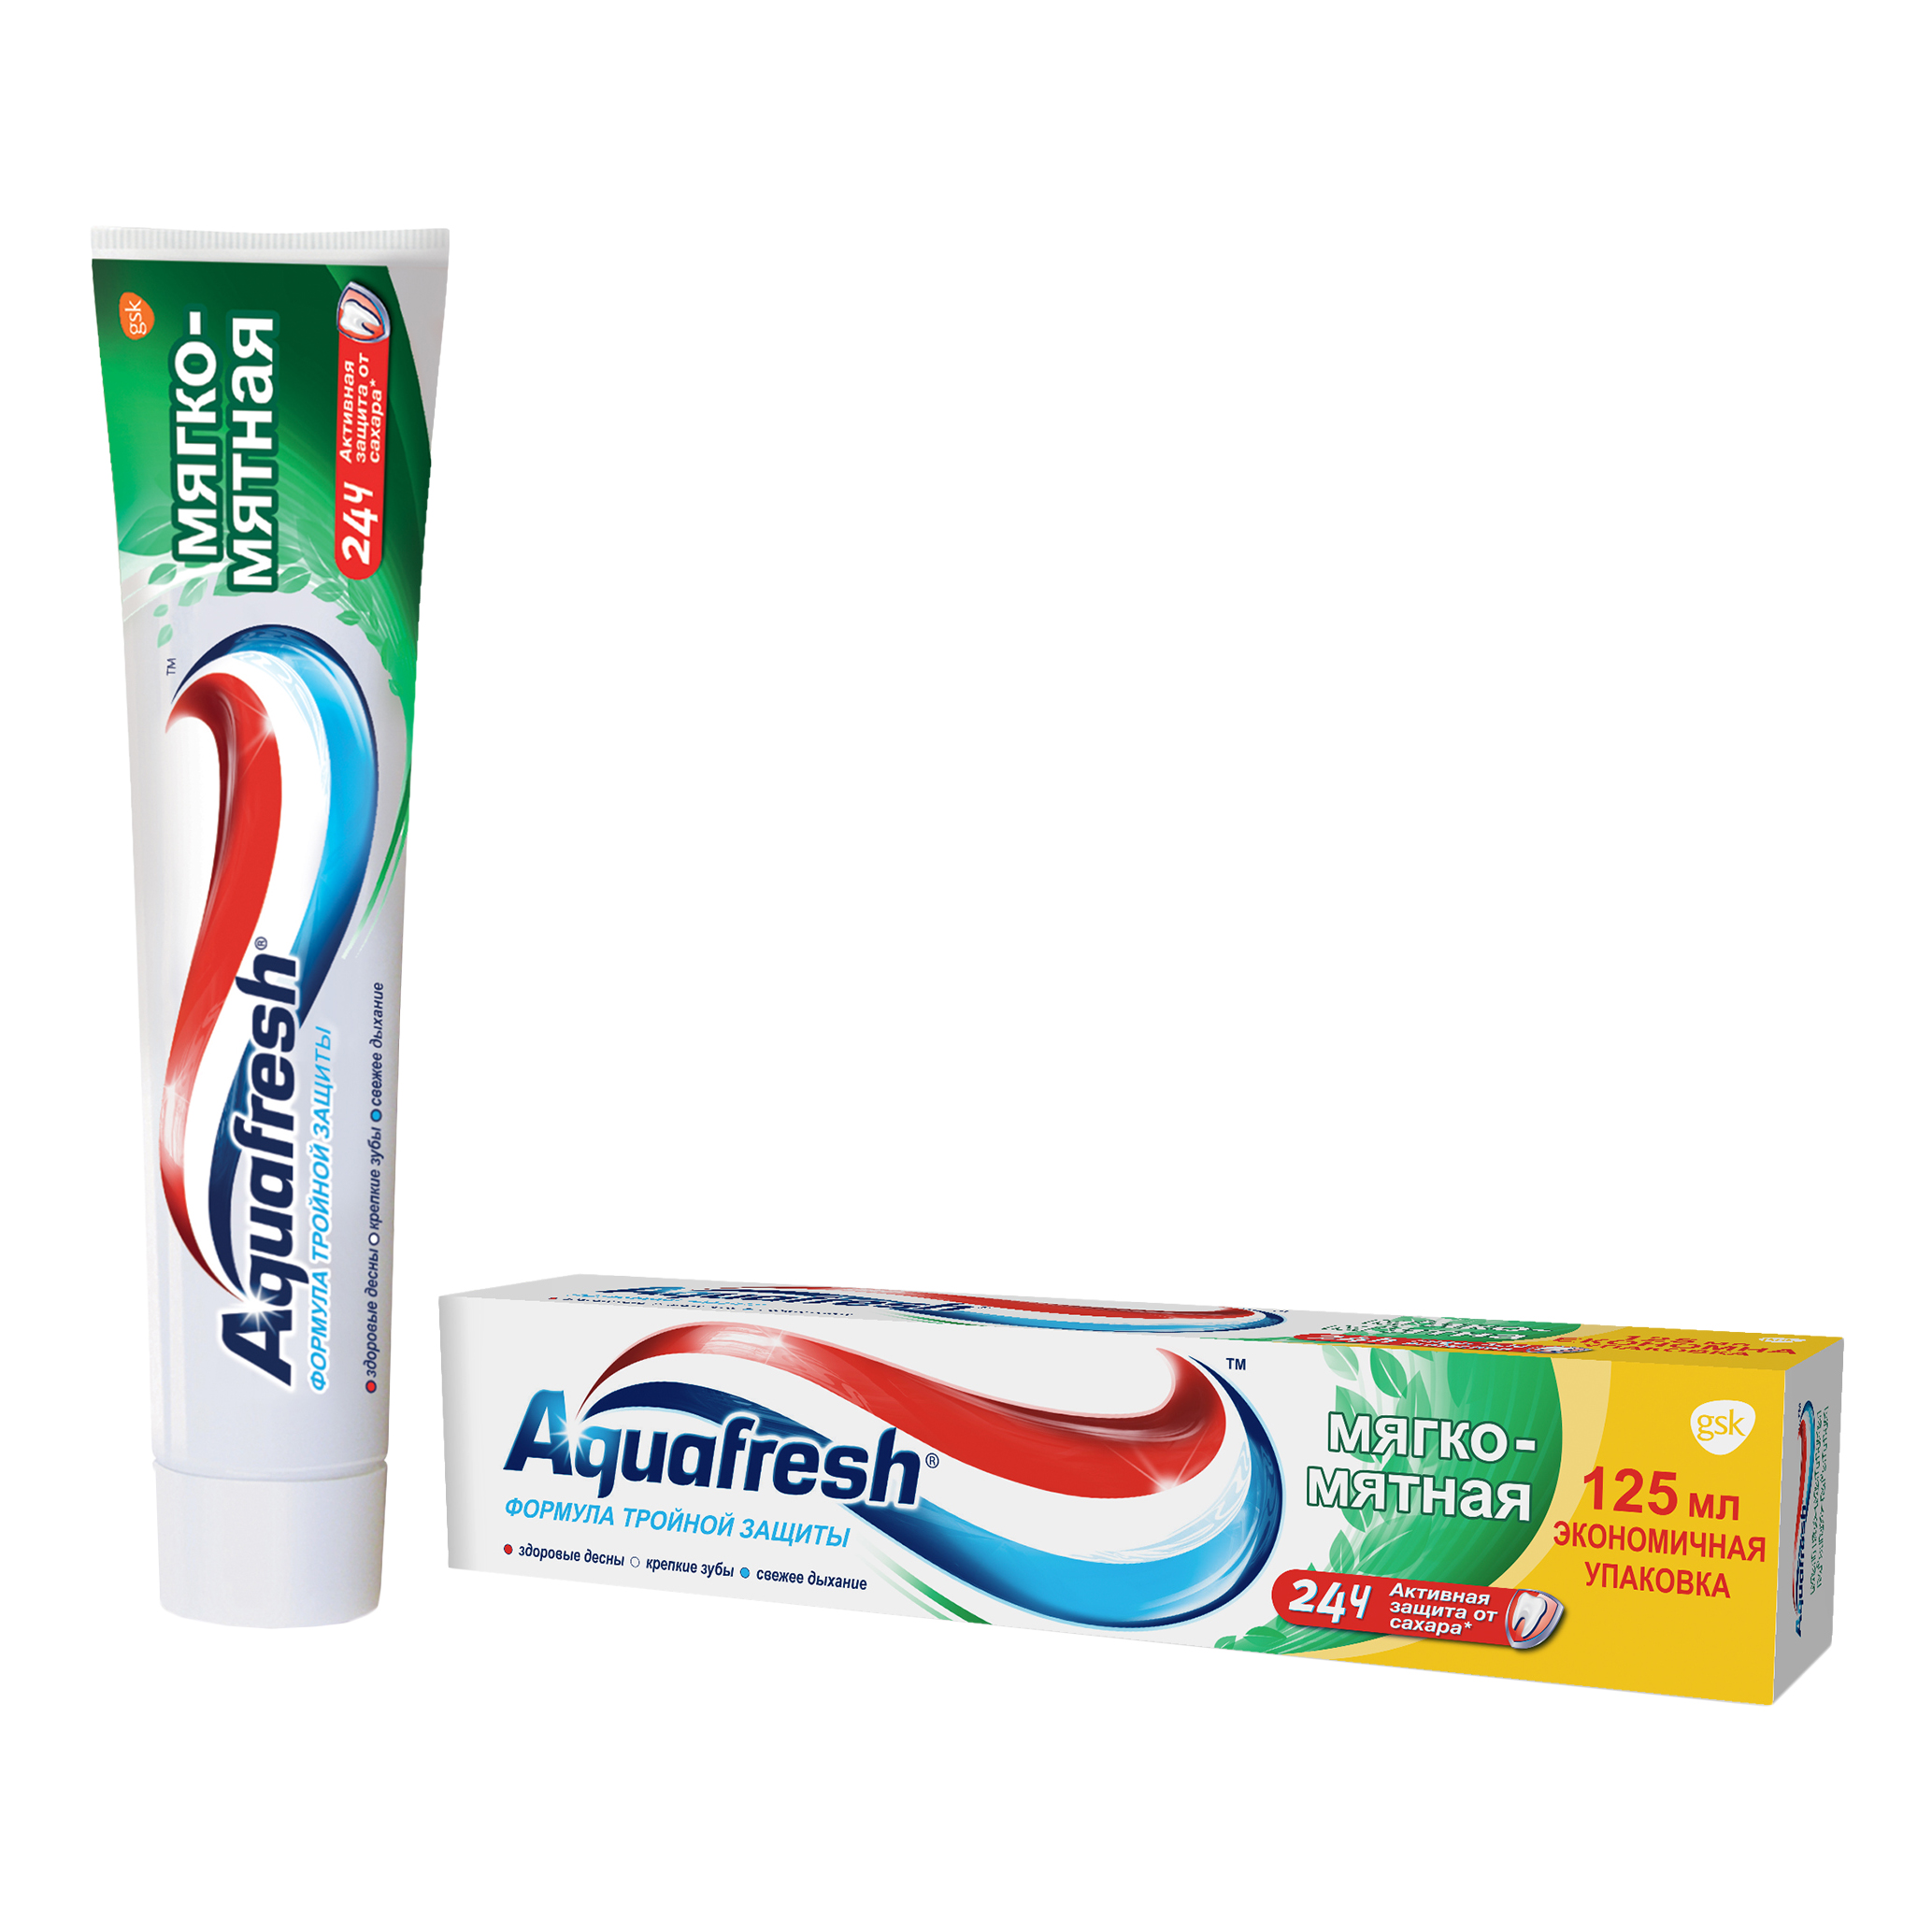 Купить Зубная паста Aquafresh Тройная защита Мягко-мятная, 125 мл, зубная паста PNS70801R00/PNS7093700